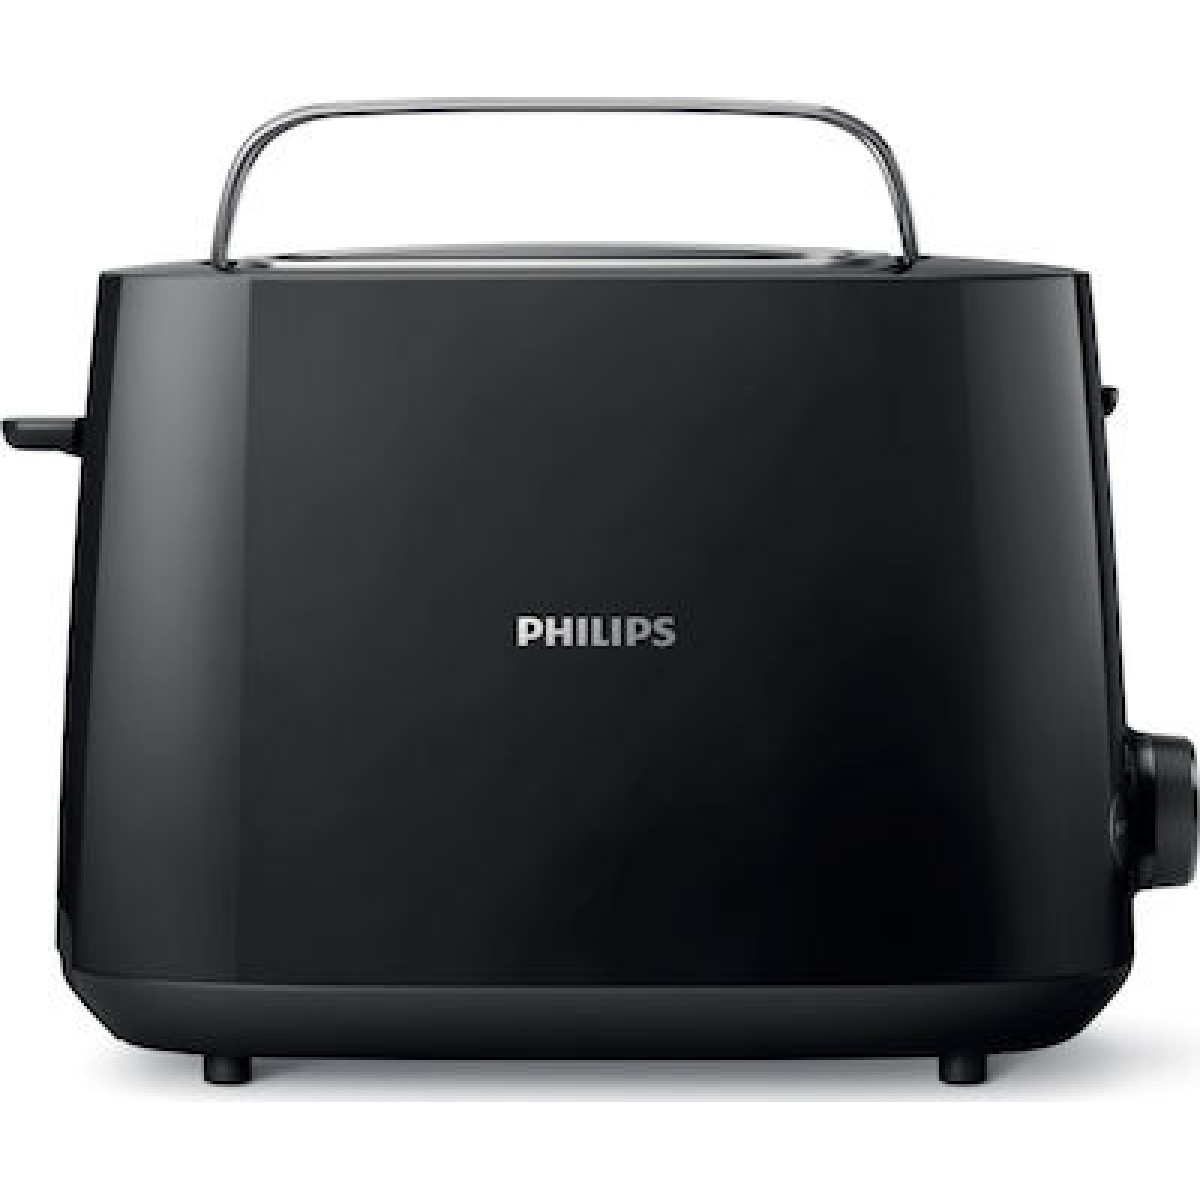 Φρυγανιέρα Philips HD2581/90 2 Θέσεων 830W Μαύρη Φρυγανιέρες